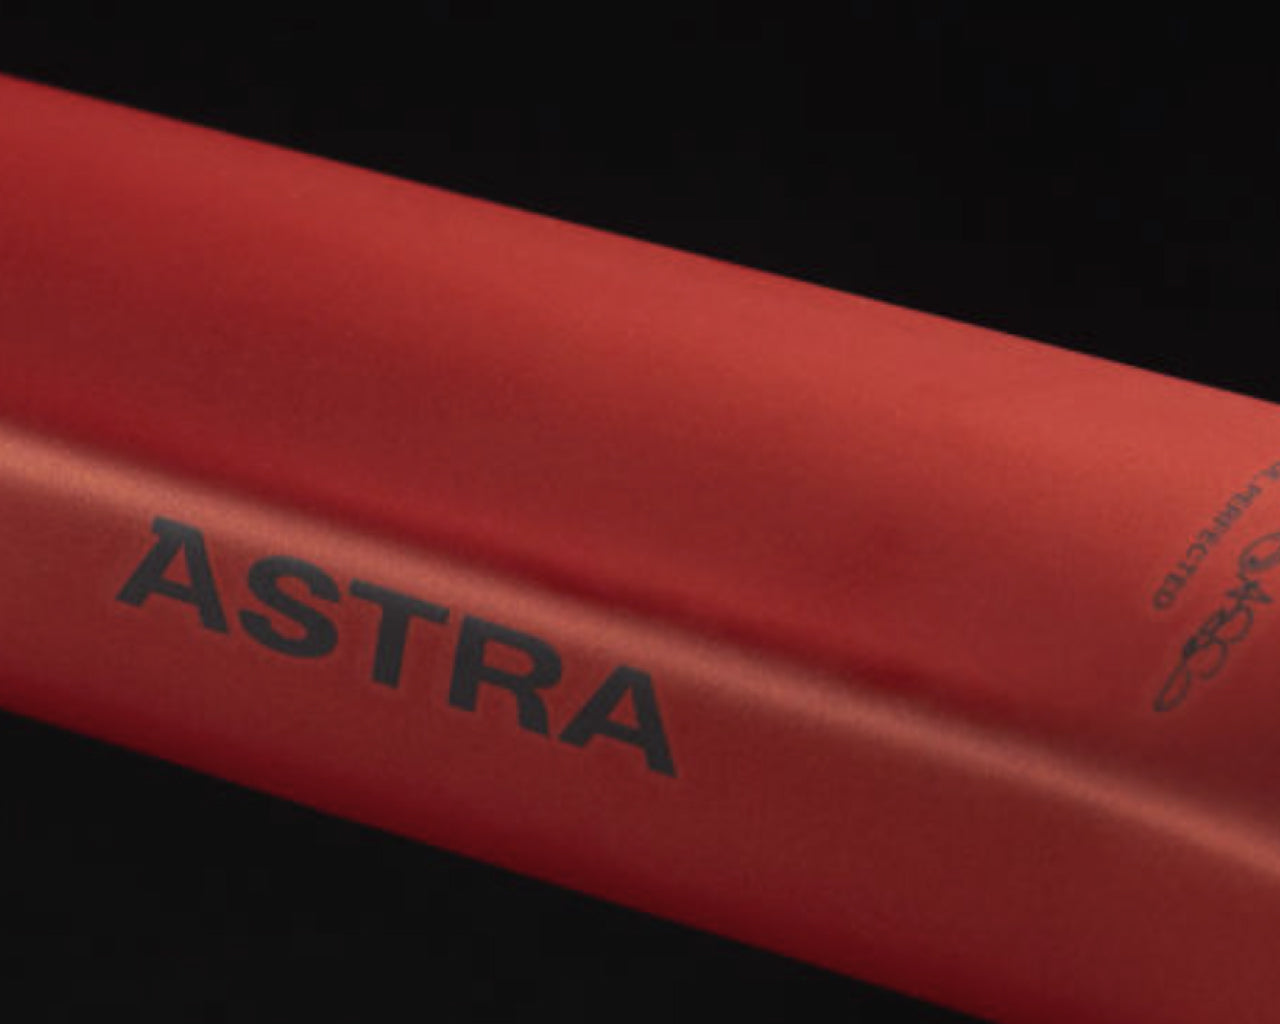 Bicicleta Basso Astra Ultegra Disc